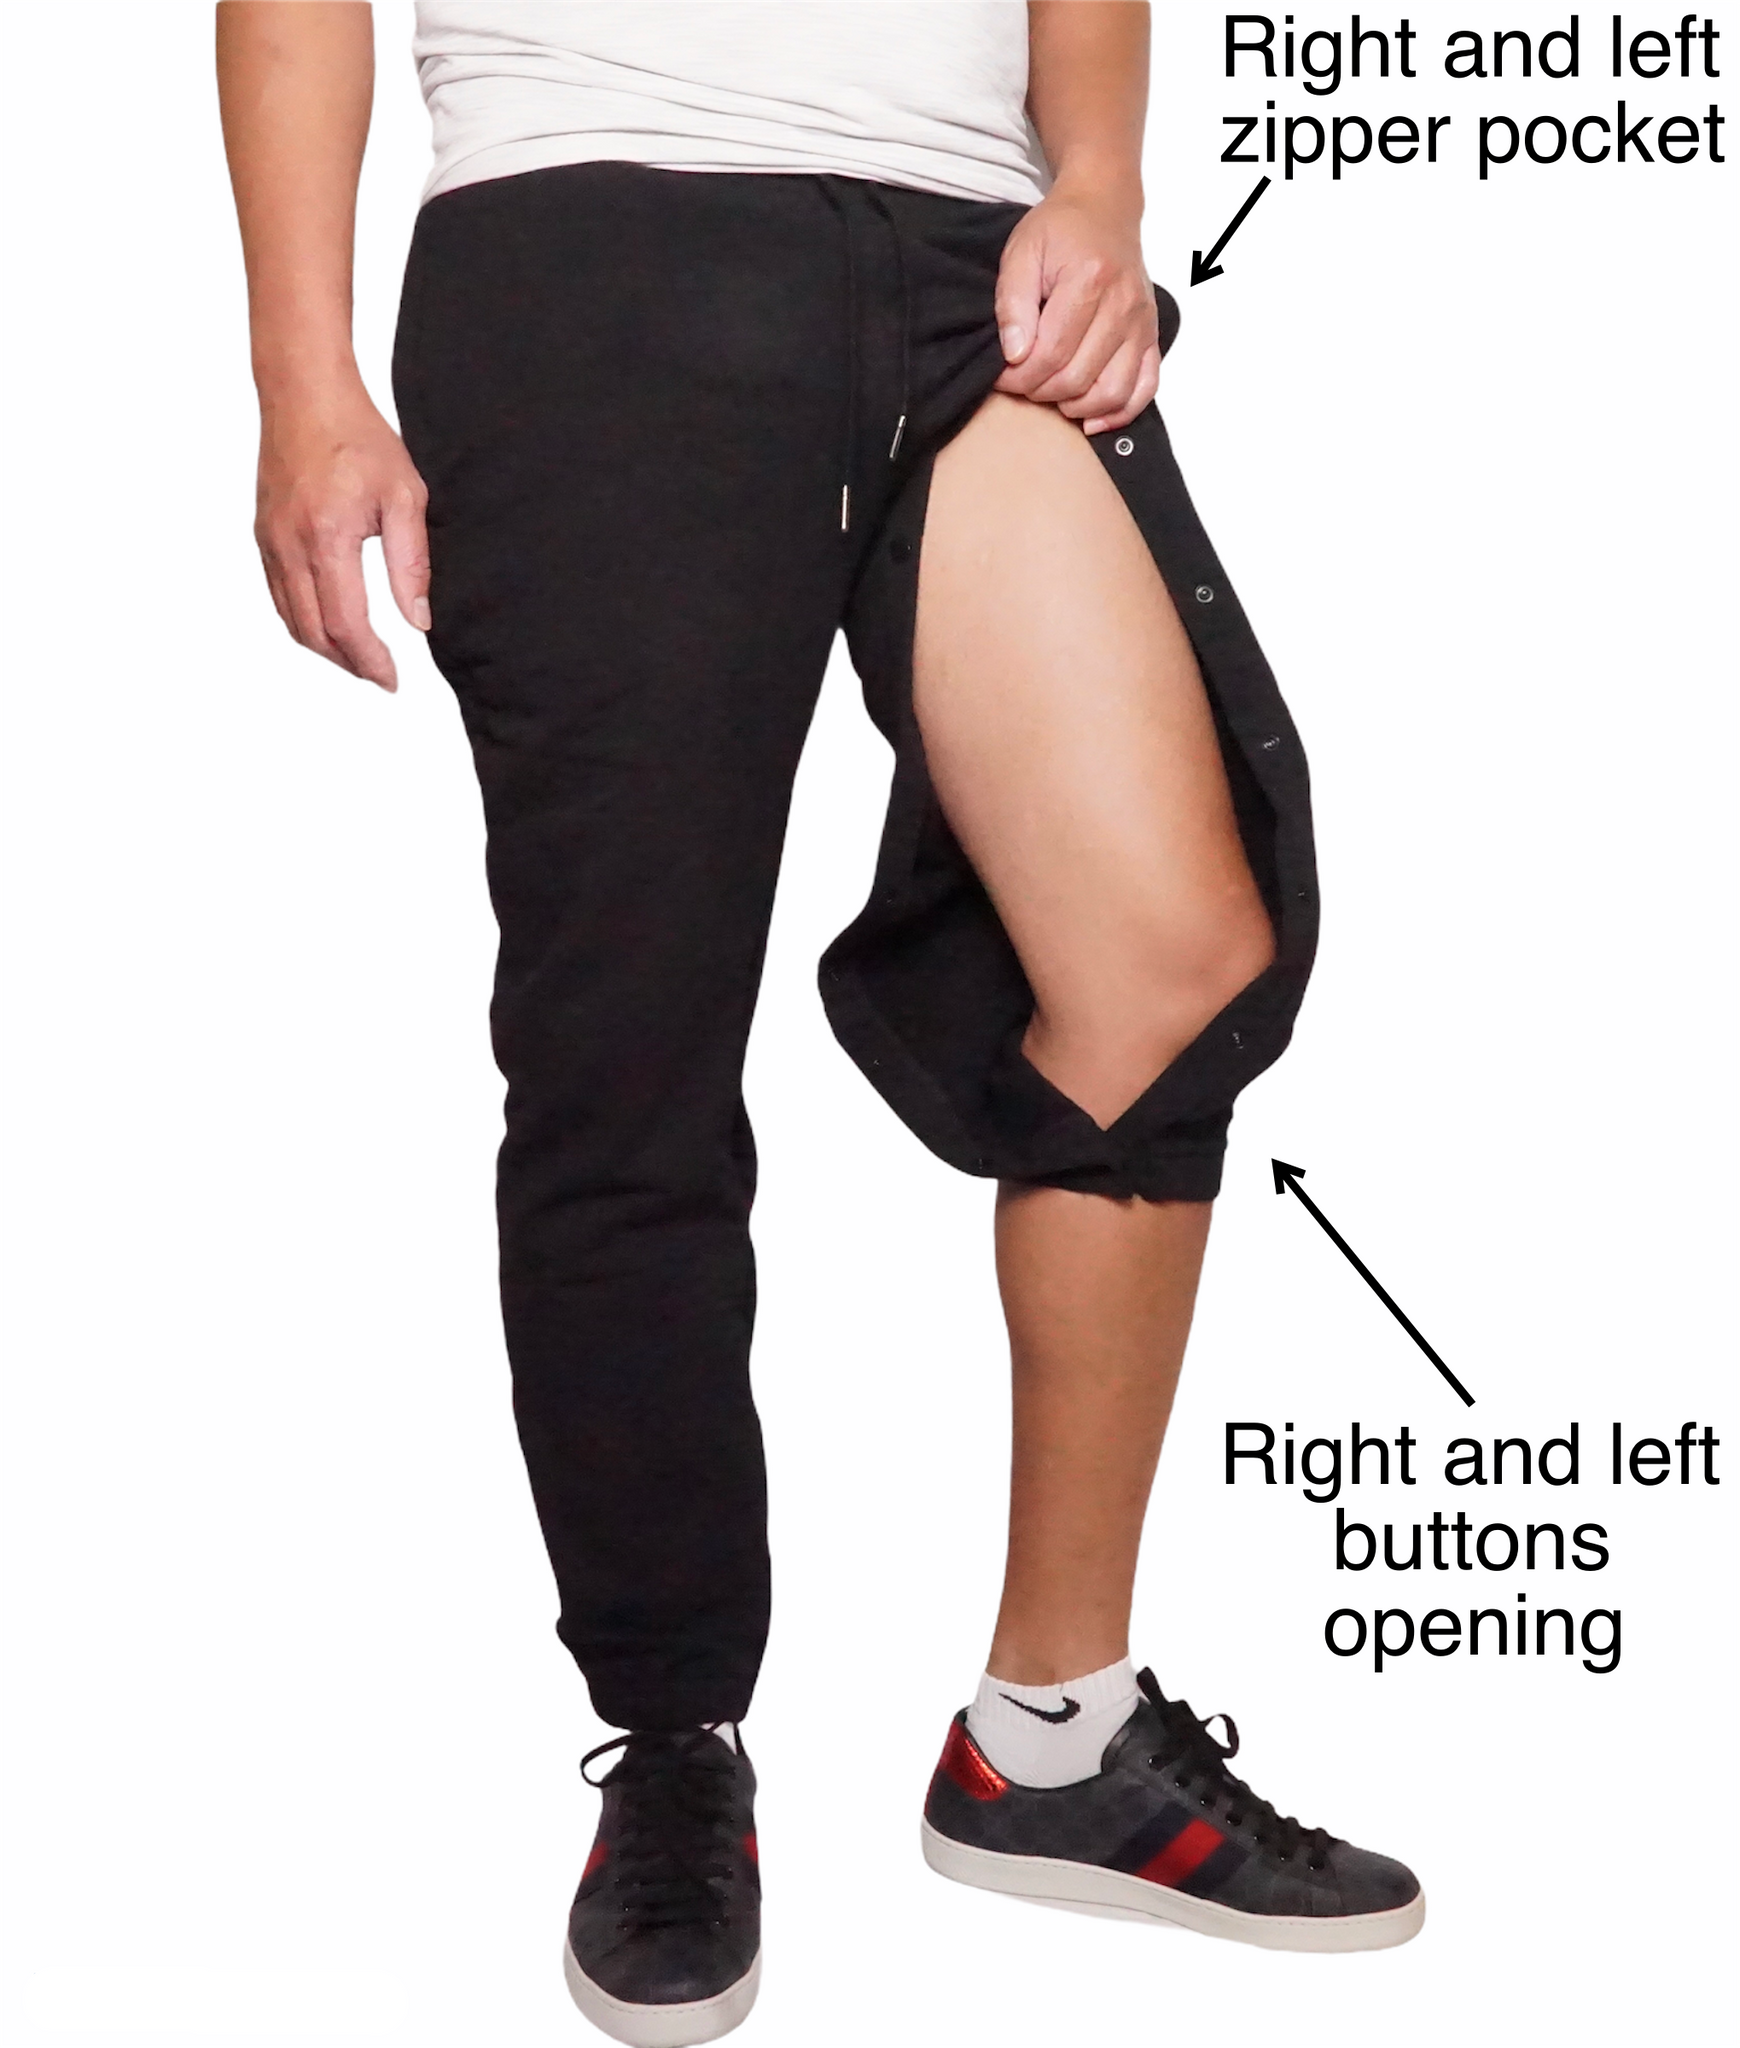 Women's High-Rise Open Bottom Fleece Pants - JoyLab™ Beige XS